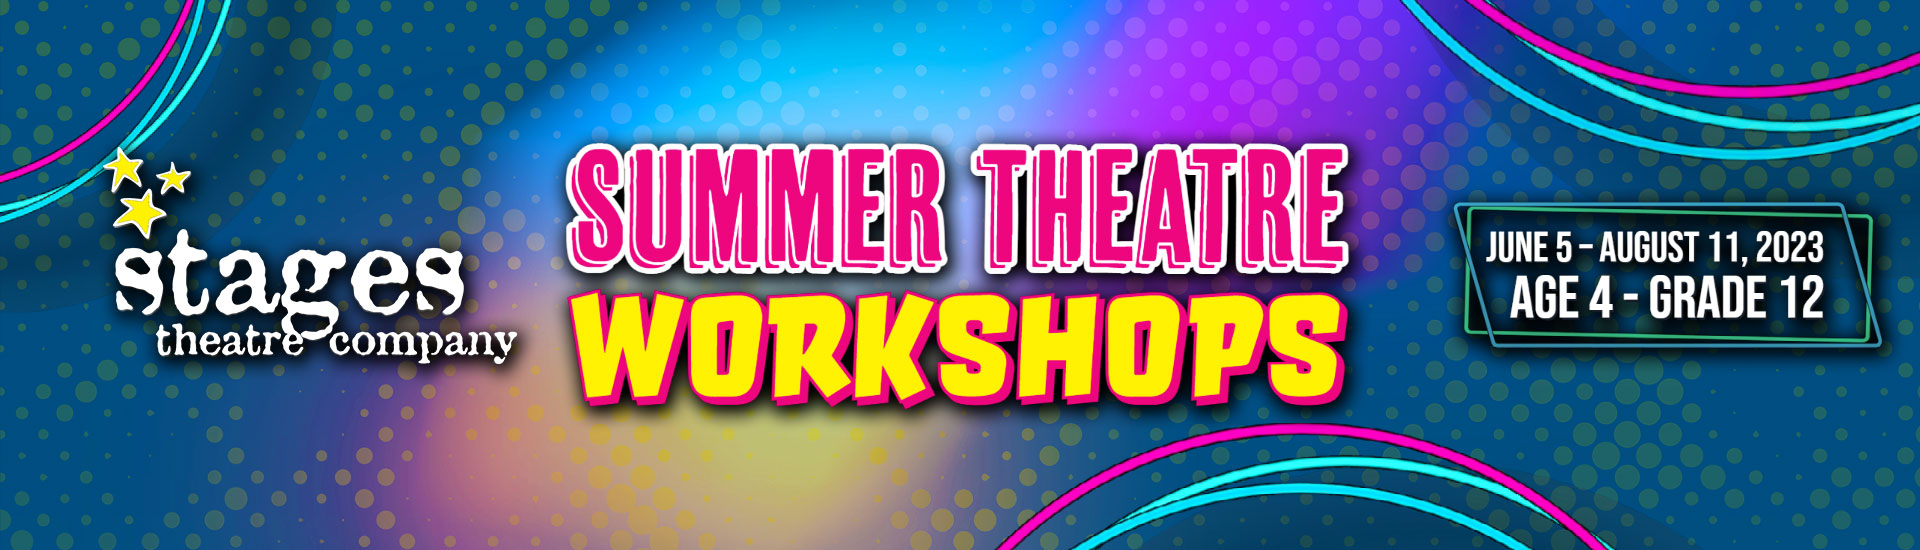 Summer Theatre Workshop Header